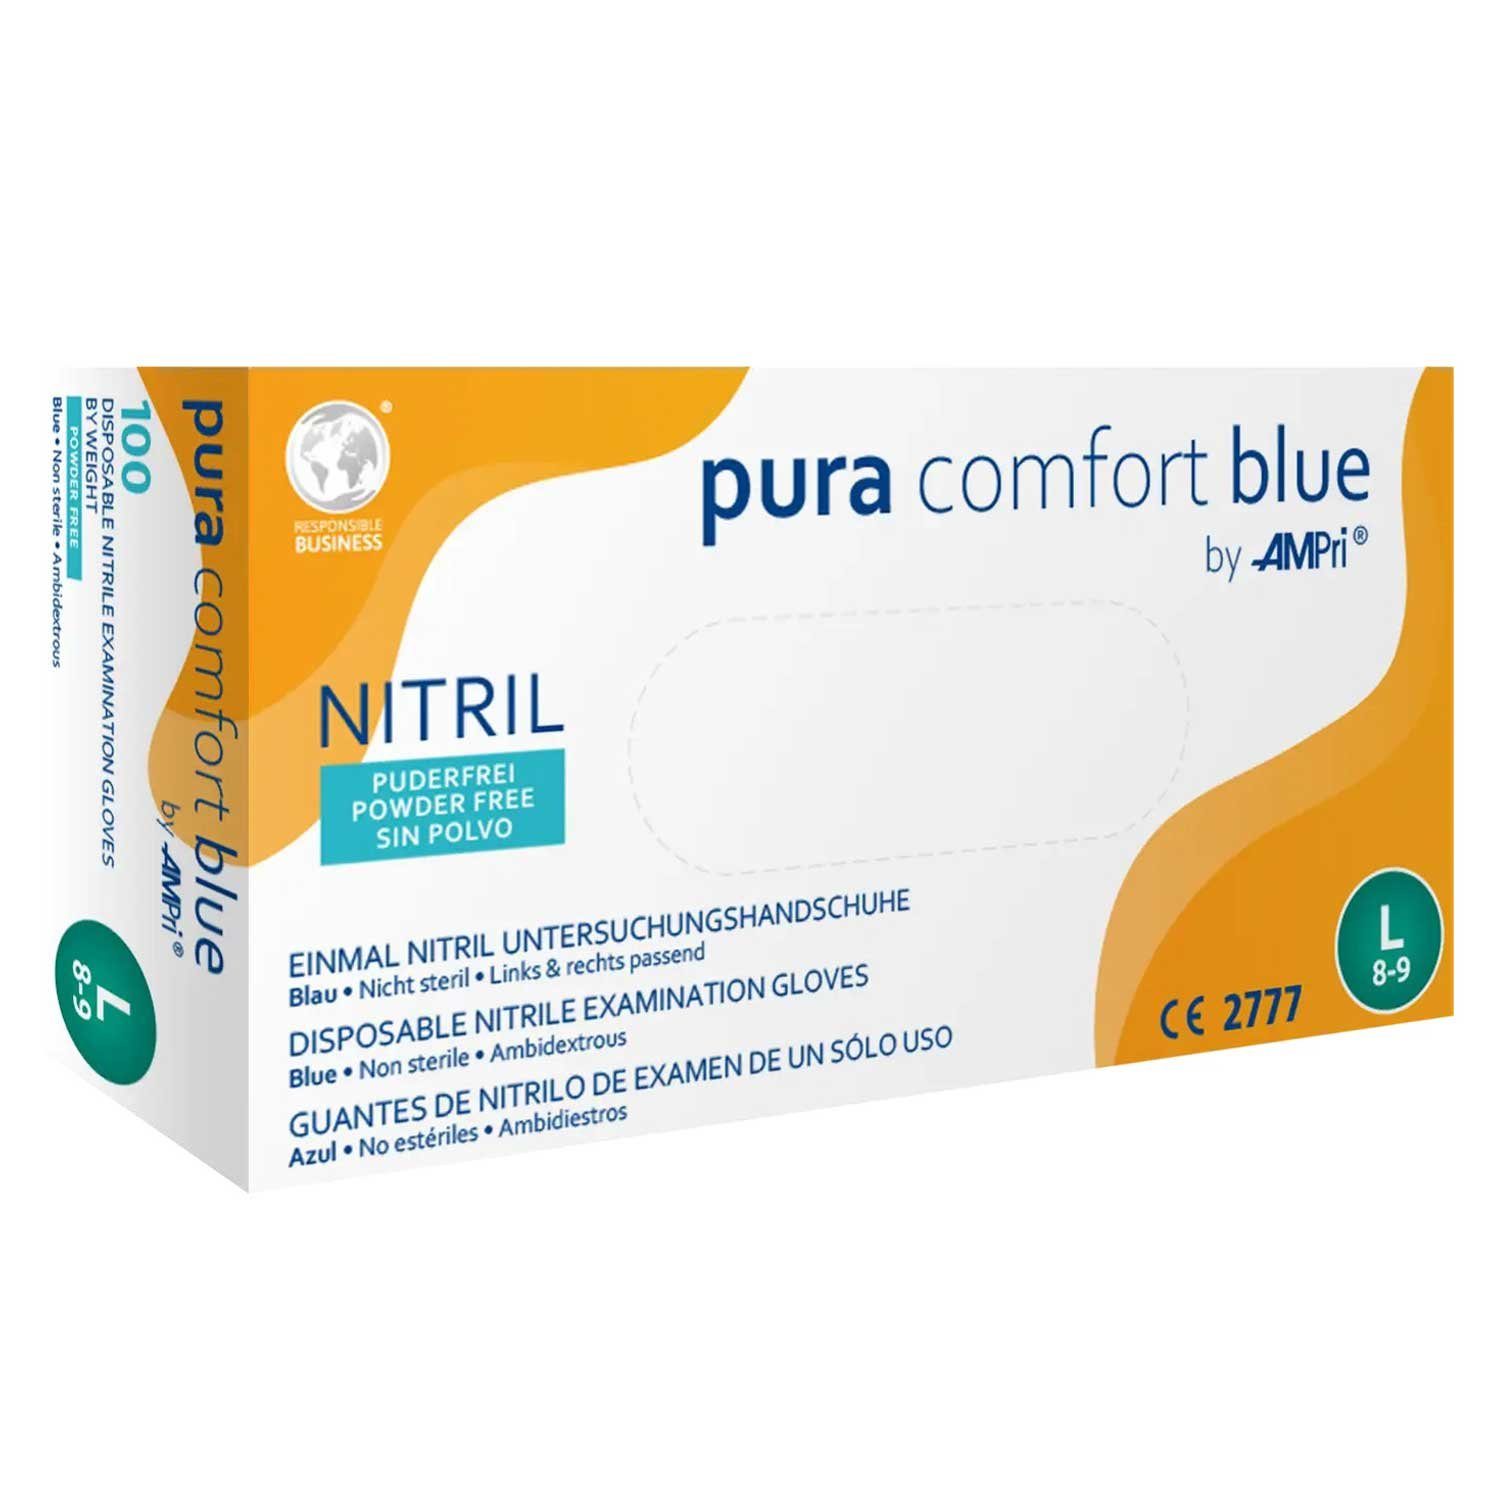 AMPri Nitril-Handschuhe Pura Comfort Blue Nitril Untersuchungshandschuh Größe S KARTON Biologischer Schutz gegen Viren, Bakterien und Pilze